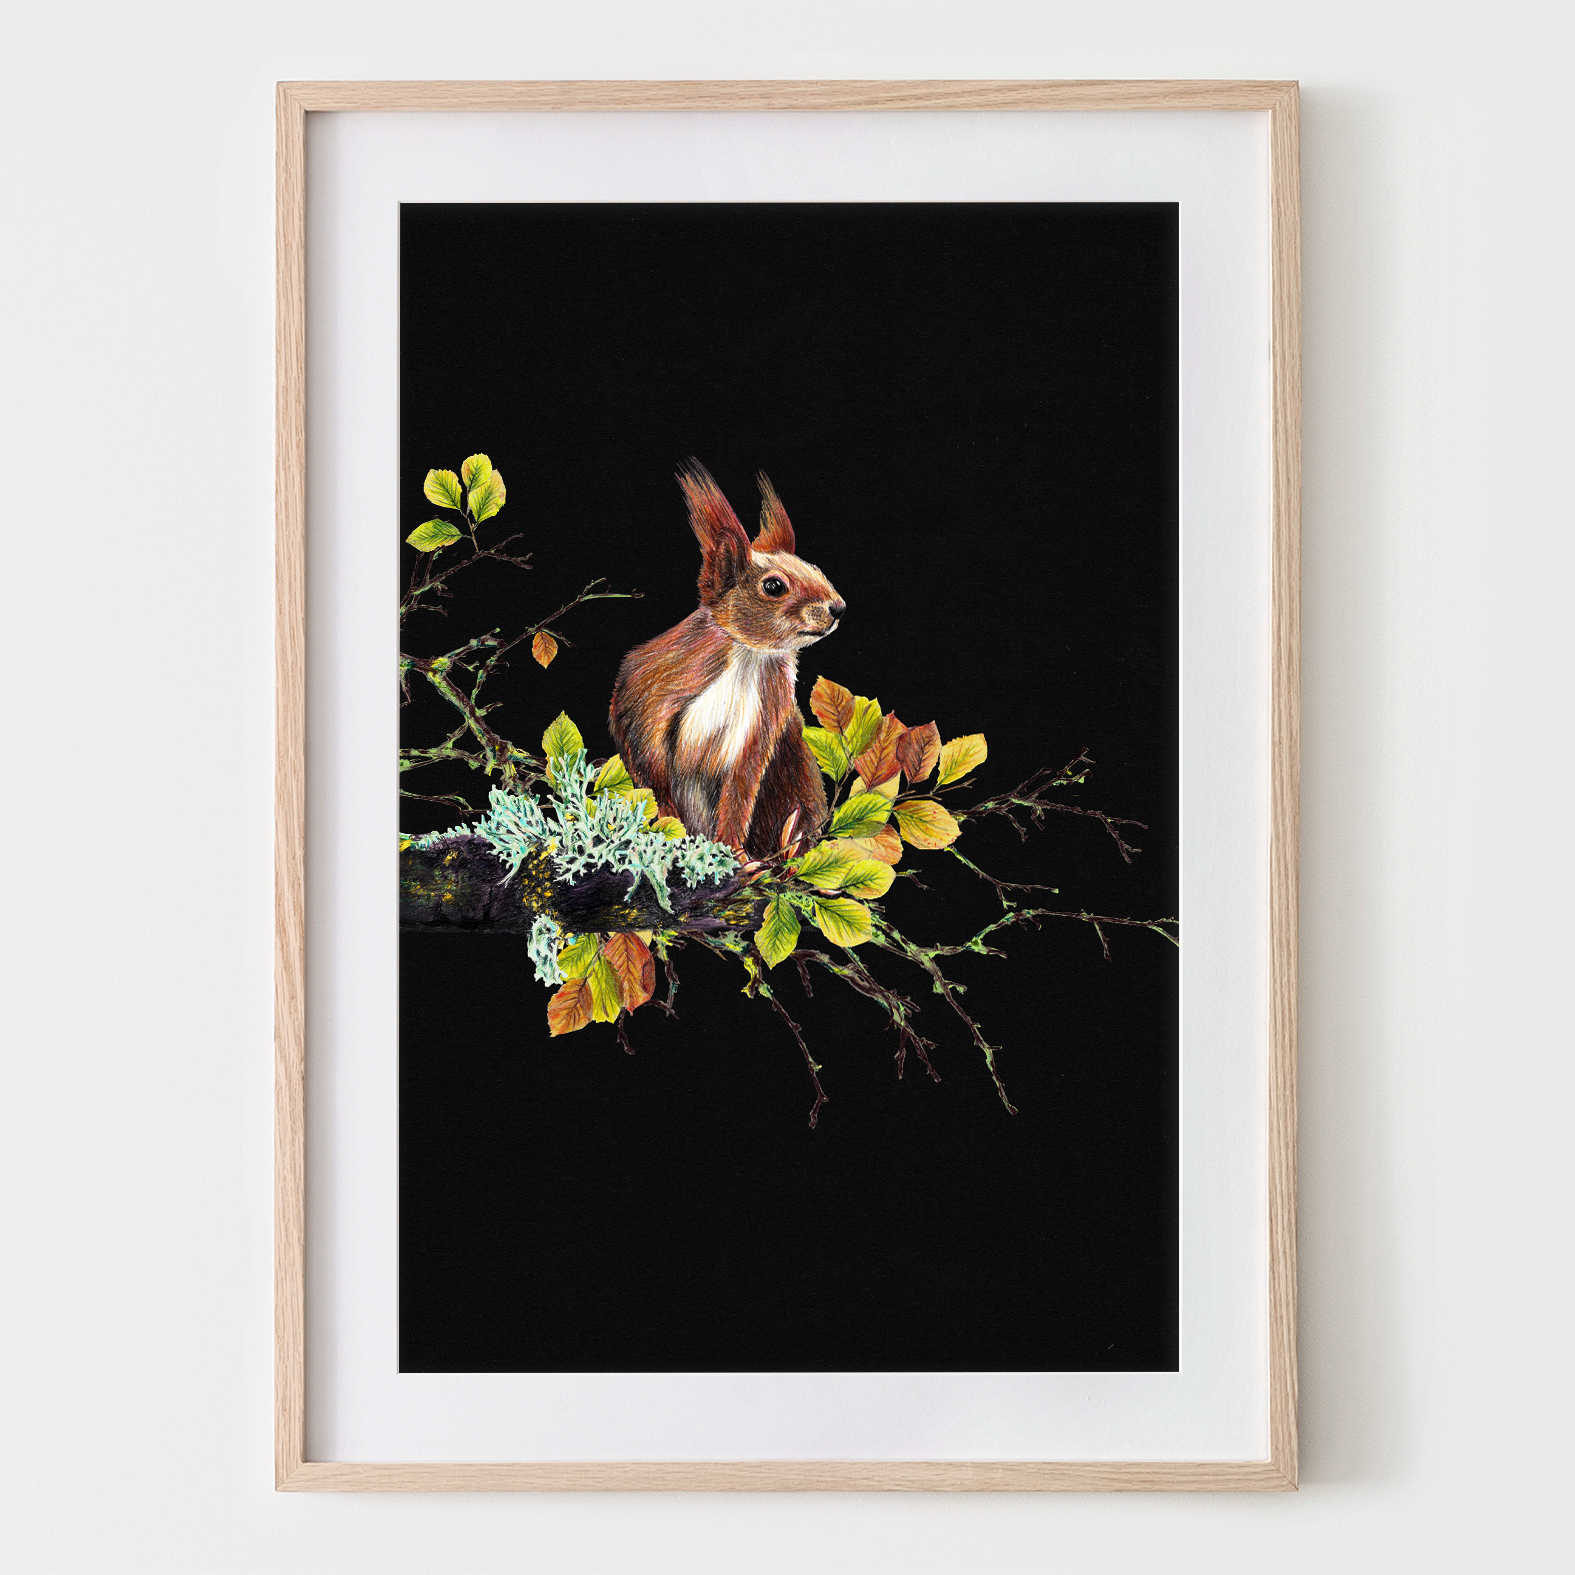 Eichhörnchen auf dem Ast, Fine Art Print, Giclée Print, Poster, Kunstdruck, Zeichnung